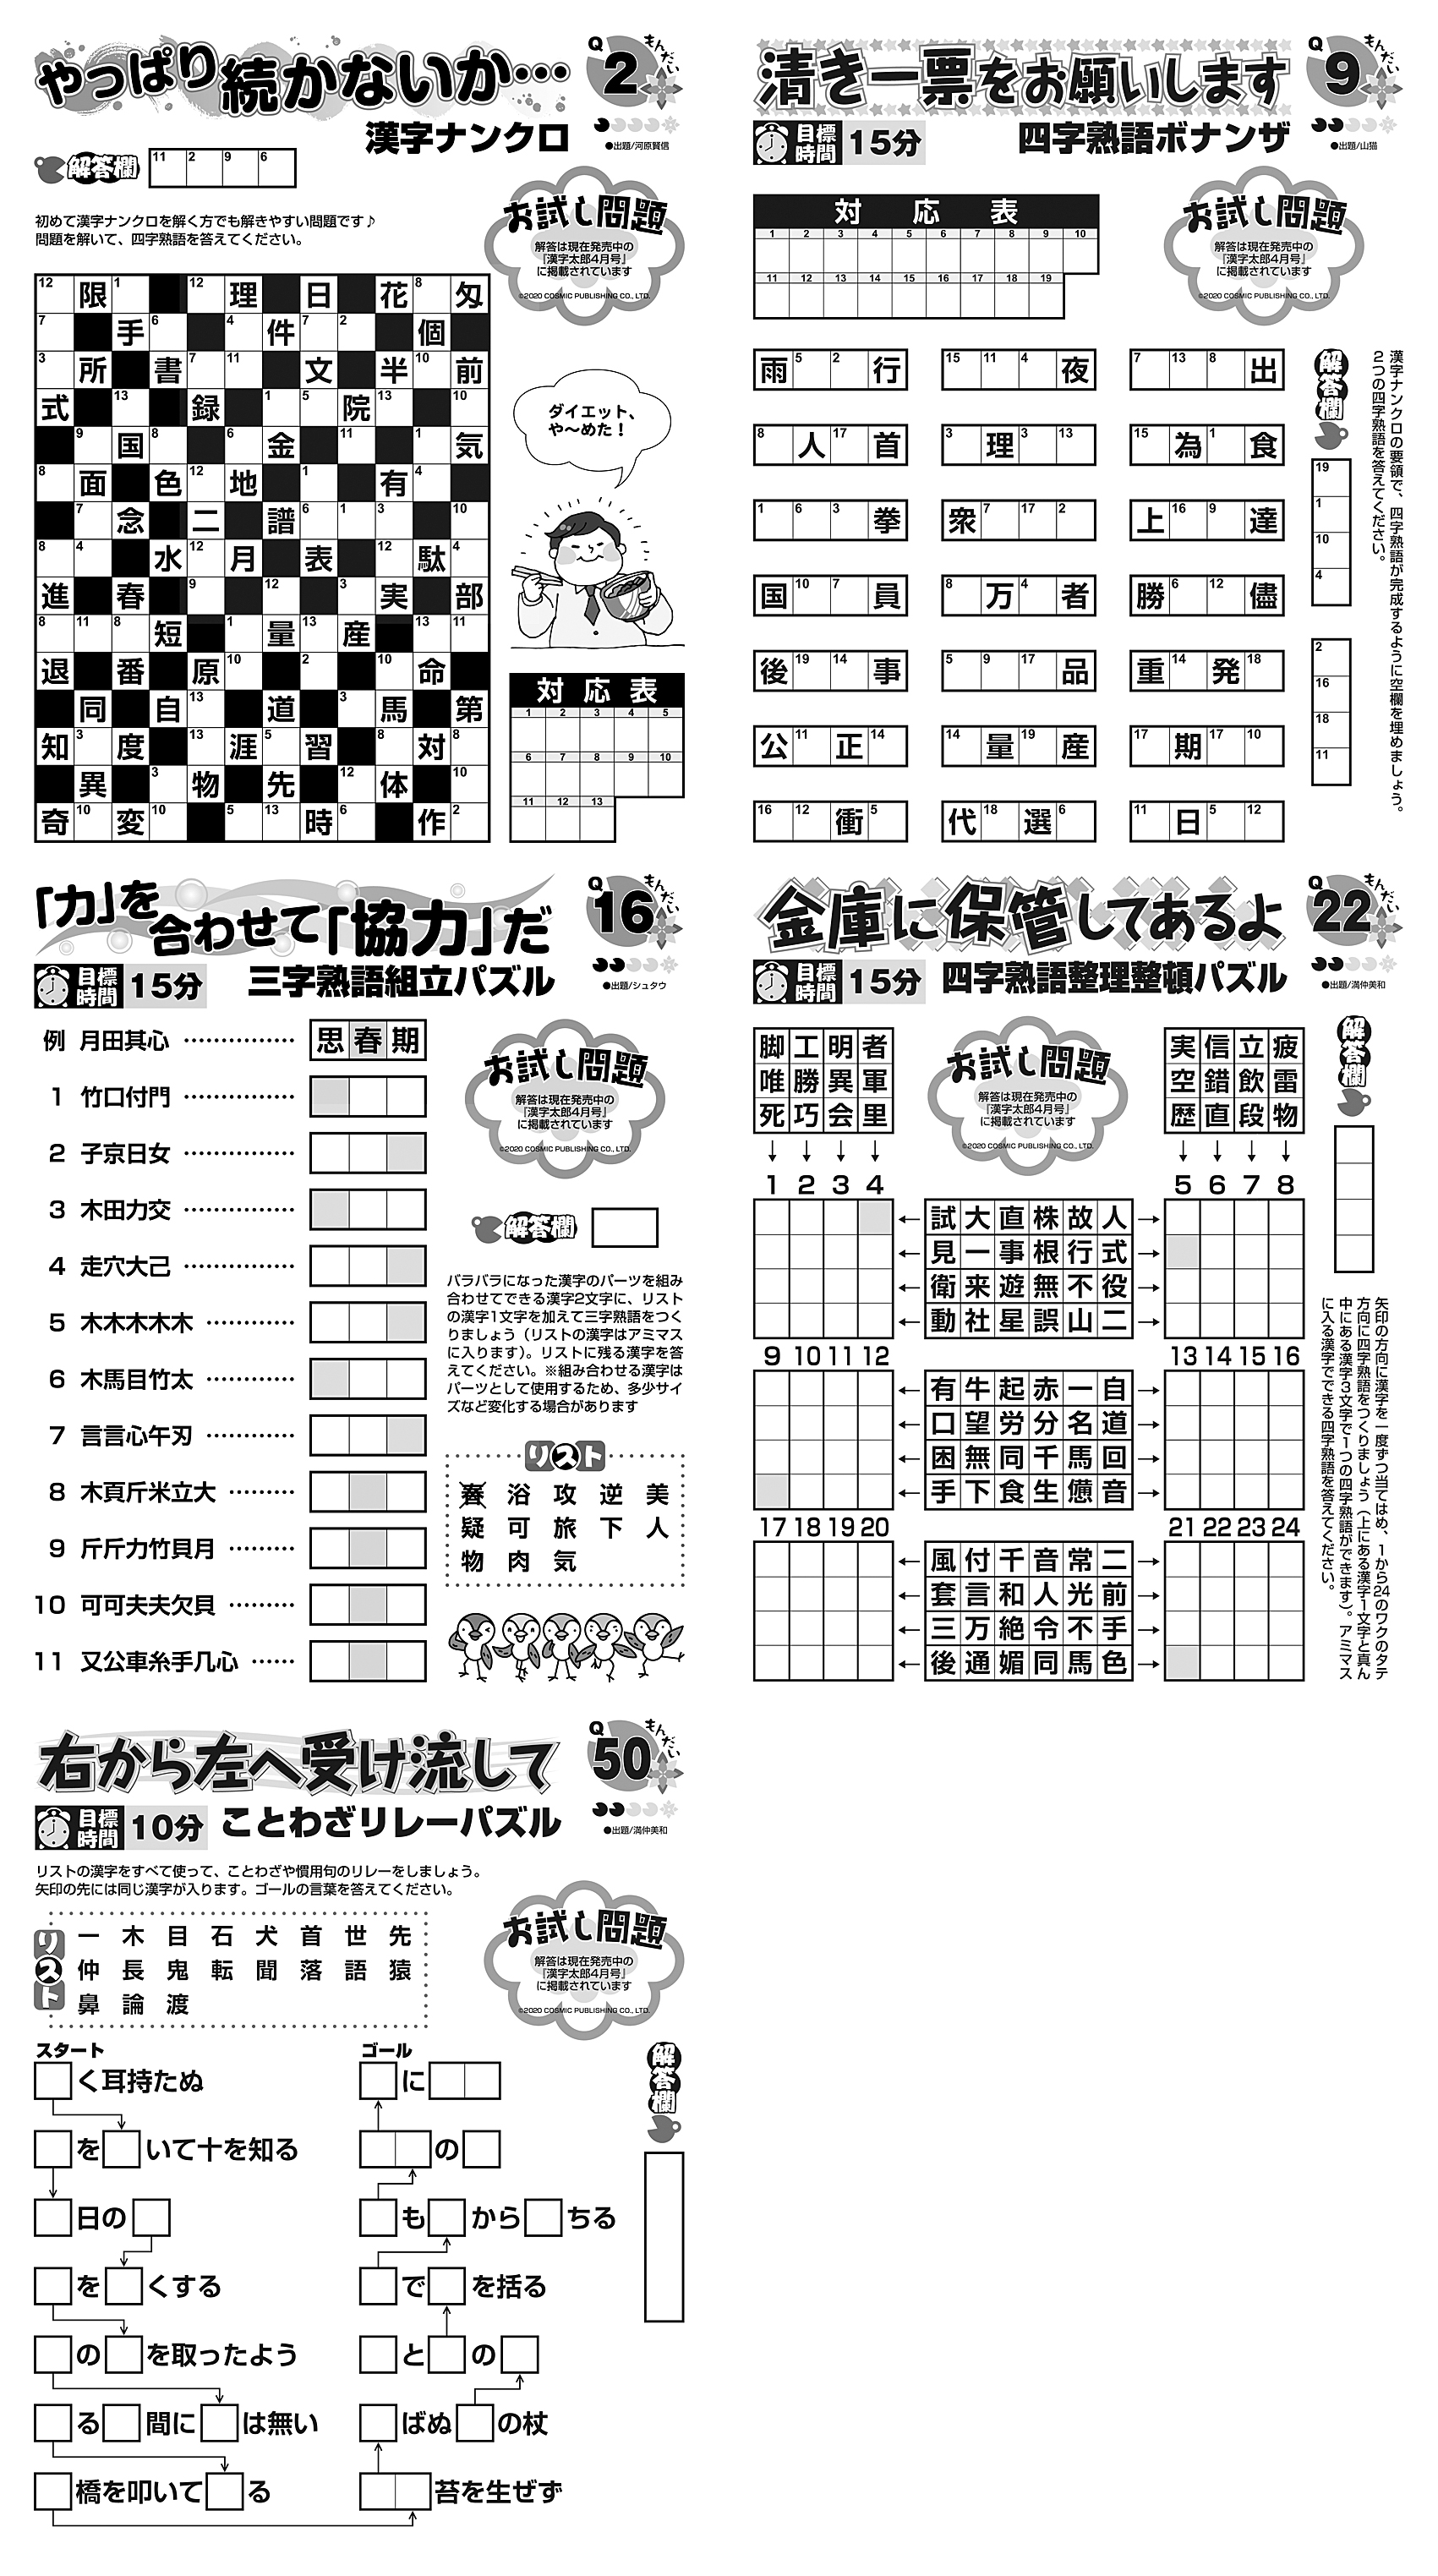 パズルプラザ 漢字パズルのお試しパズル